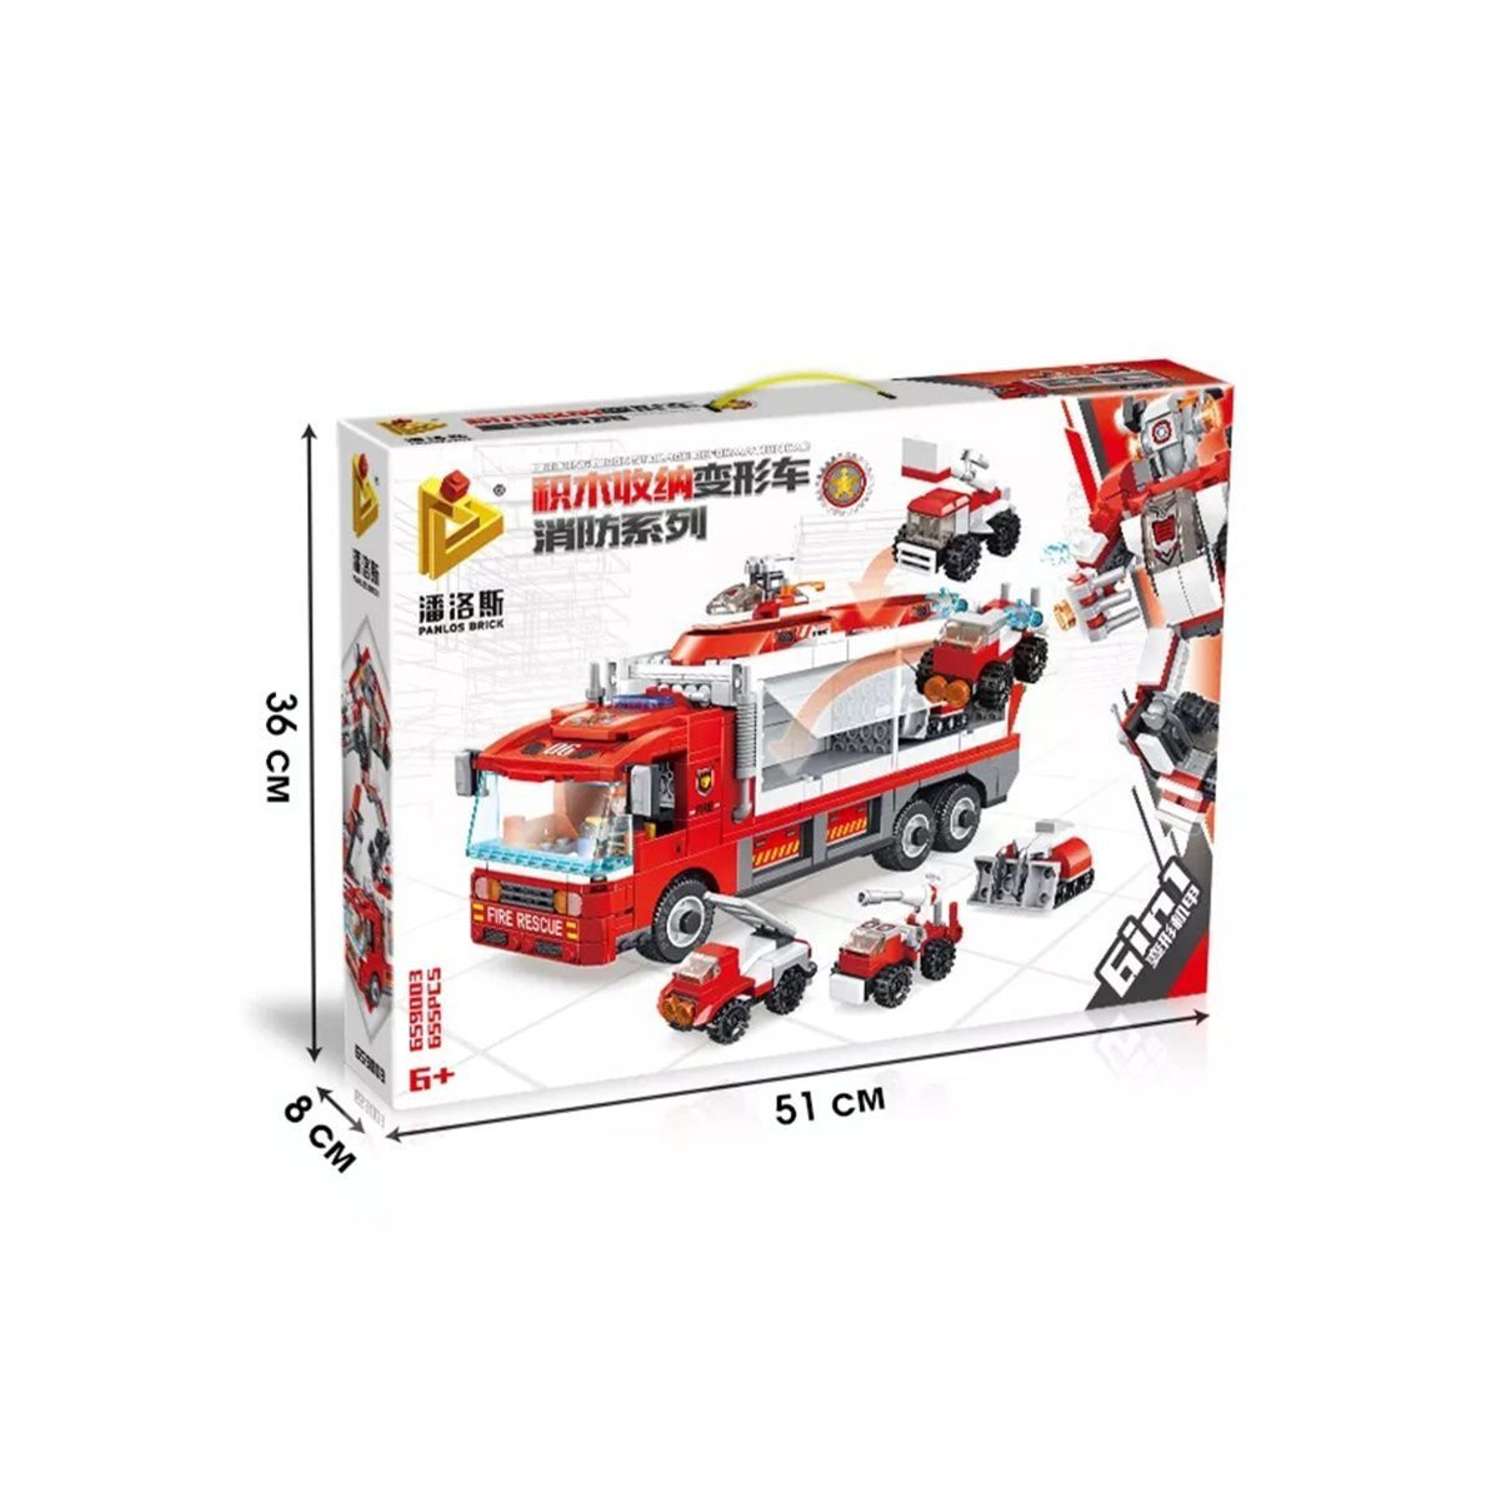 Конструктор робот трансформер ТЕХНО пожарная машина 6 в 1 машинки игрушки 655 деталей - фото 5